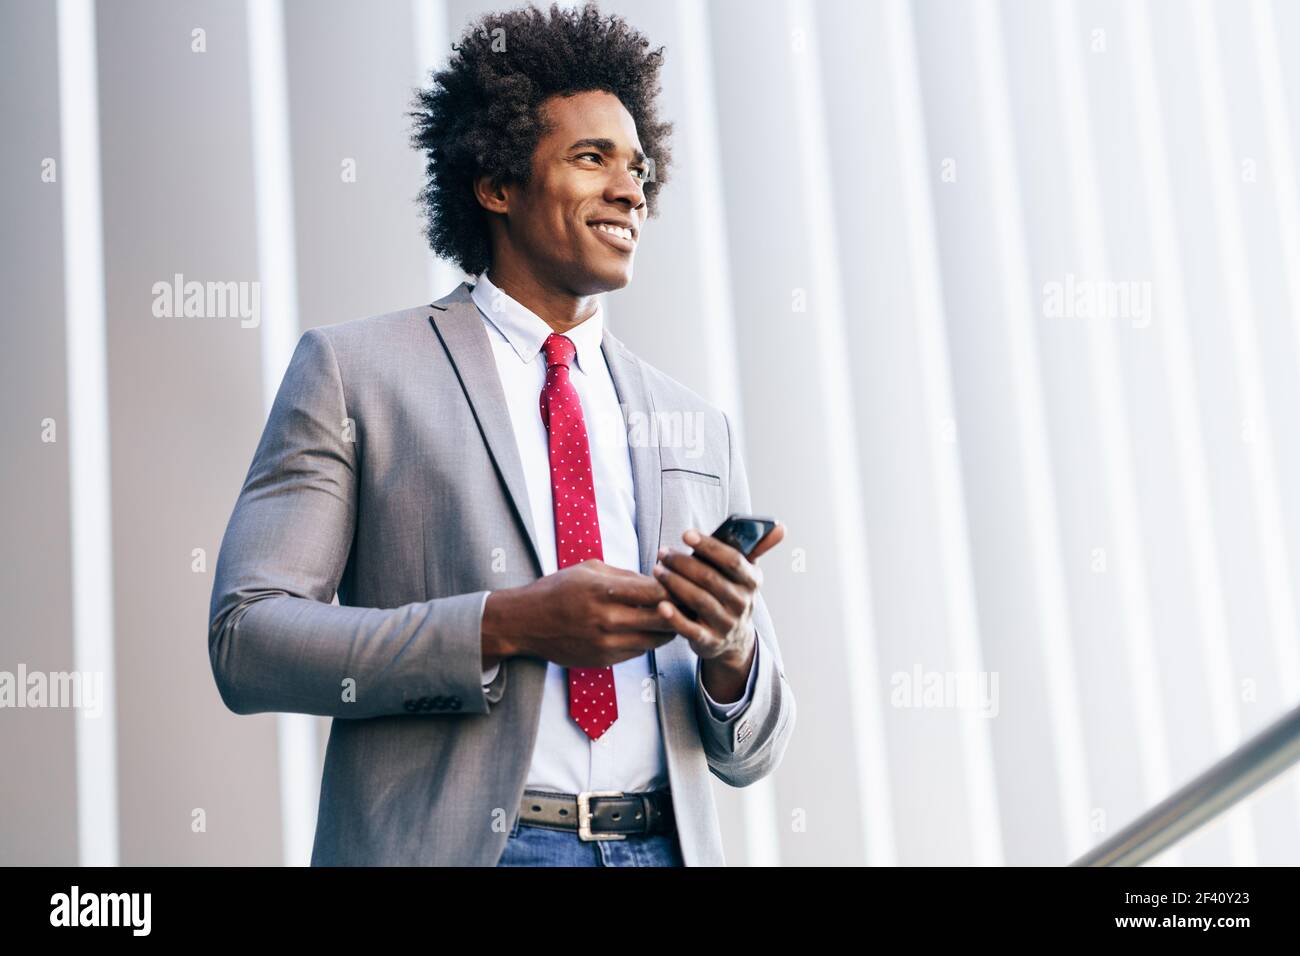 Homme d'affaires noir souriant utilisant son smartphone près d'un immeuble de bureau. Homme avec cheveux afro.. Homme d'affaires noir utilisant un smartphone près d'un immeuble de bureaux Banque D'Images